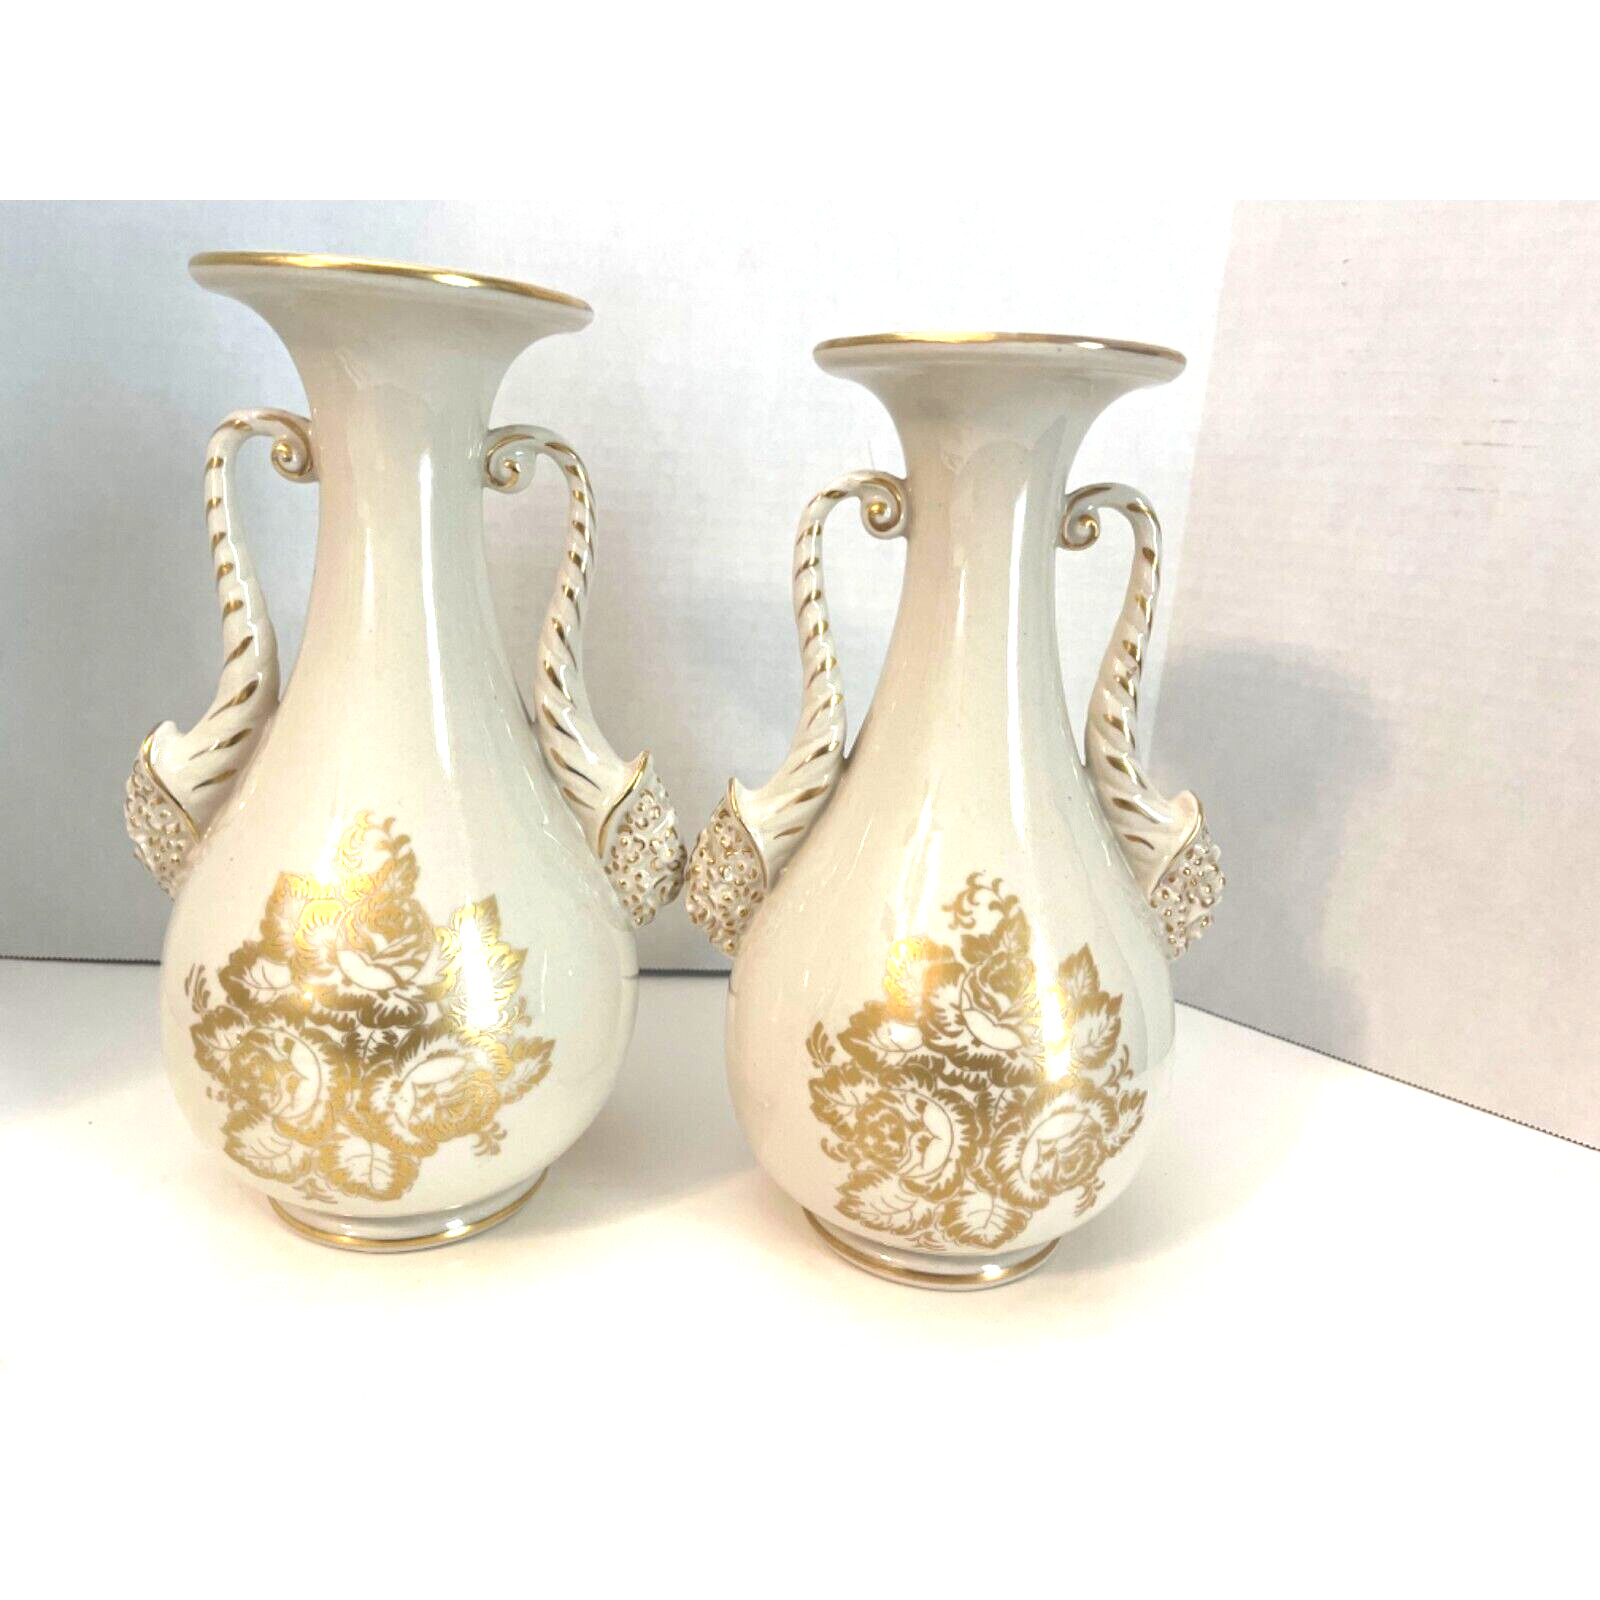 St Regis Porcelain Gold Gilded Vases, Set of 2